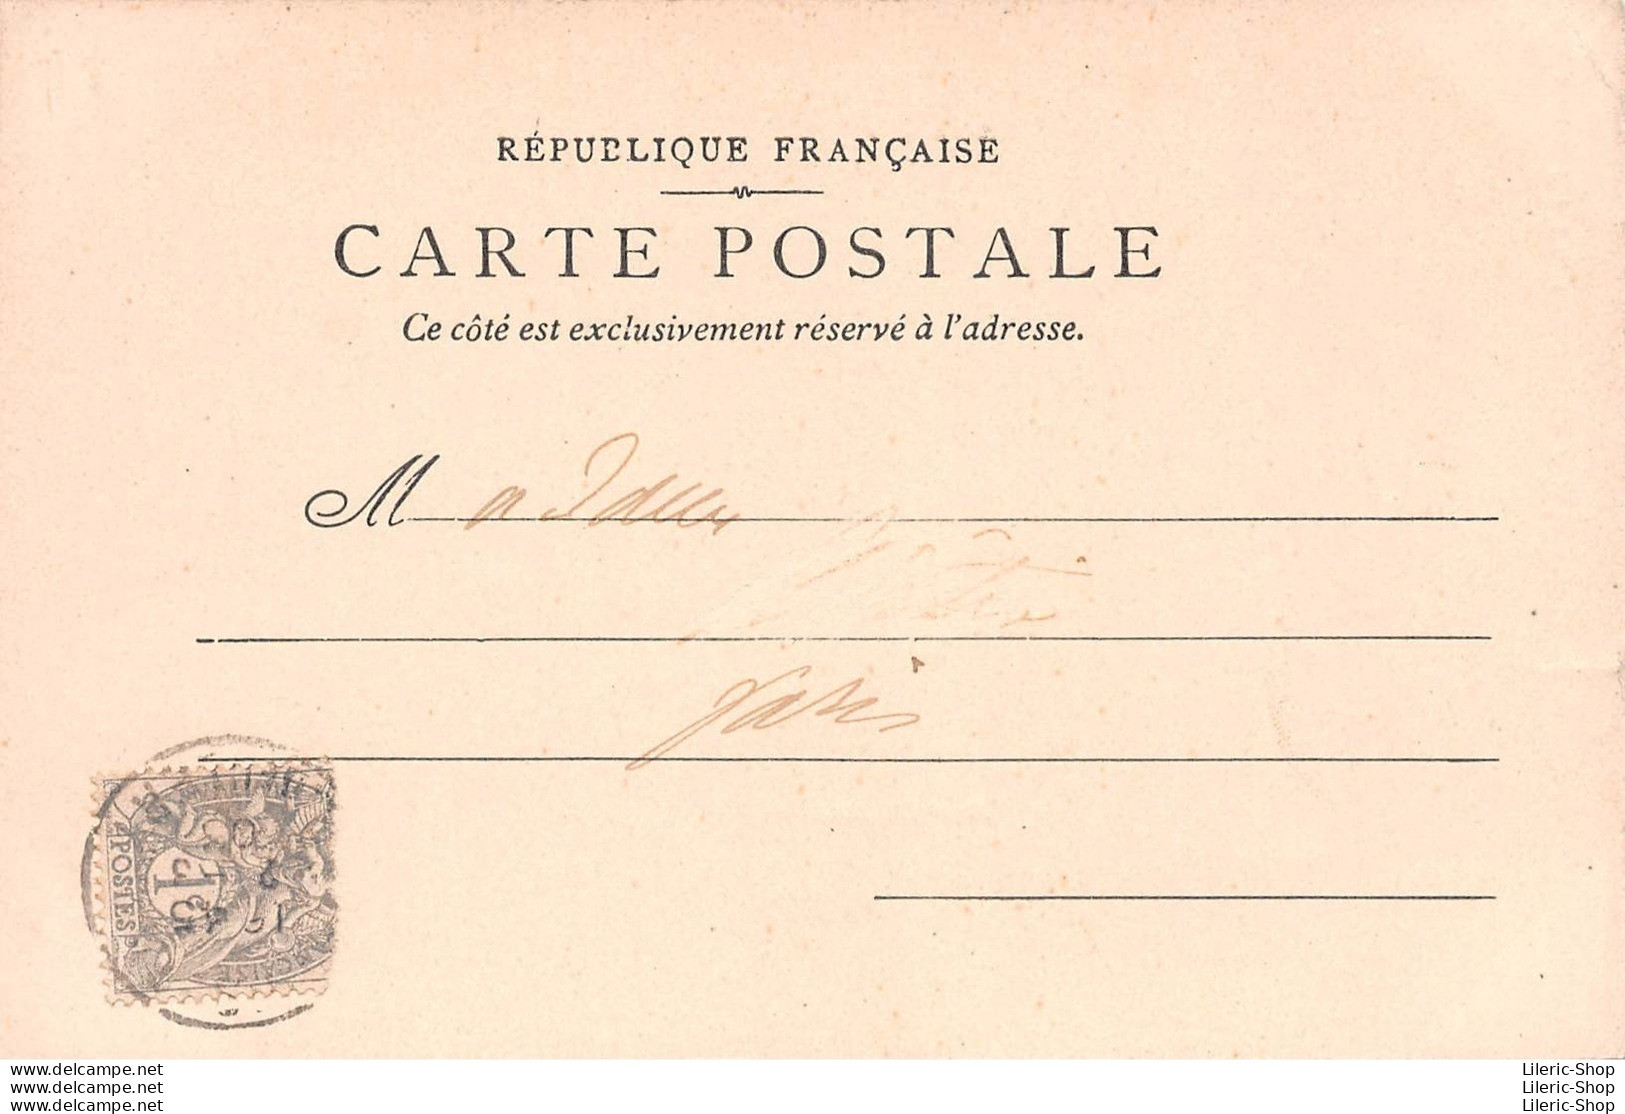 Musée Carnavalet - Journée Du 21 01 1793 - Mort De Louis Capet Sur La Place De La Révolution - Éd. P.S. 1903 CPR - Museum